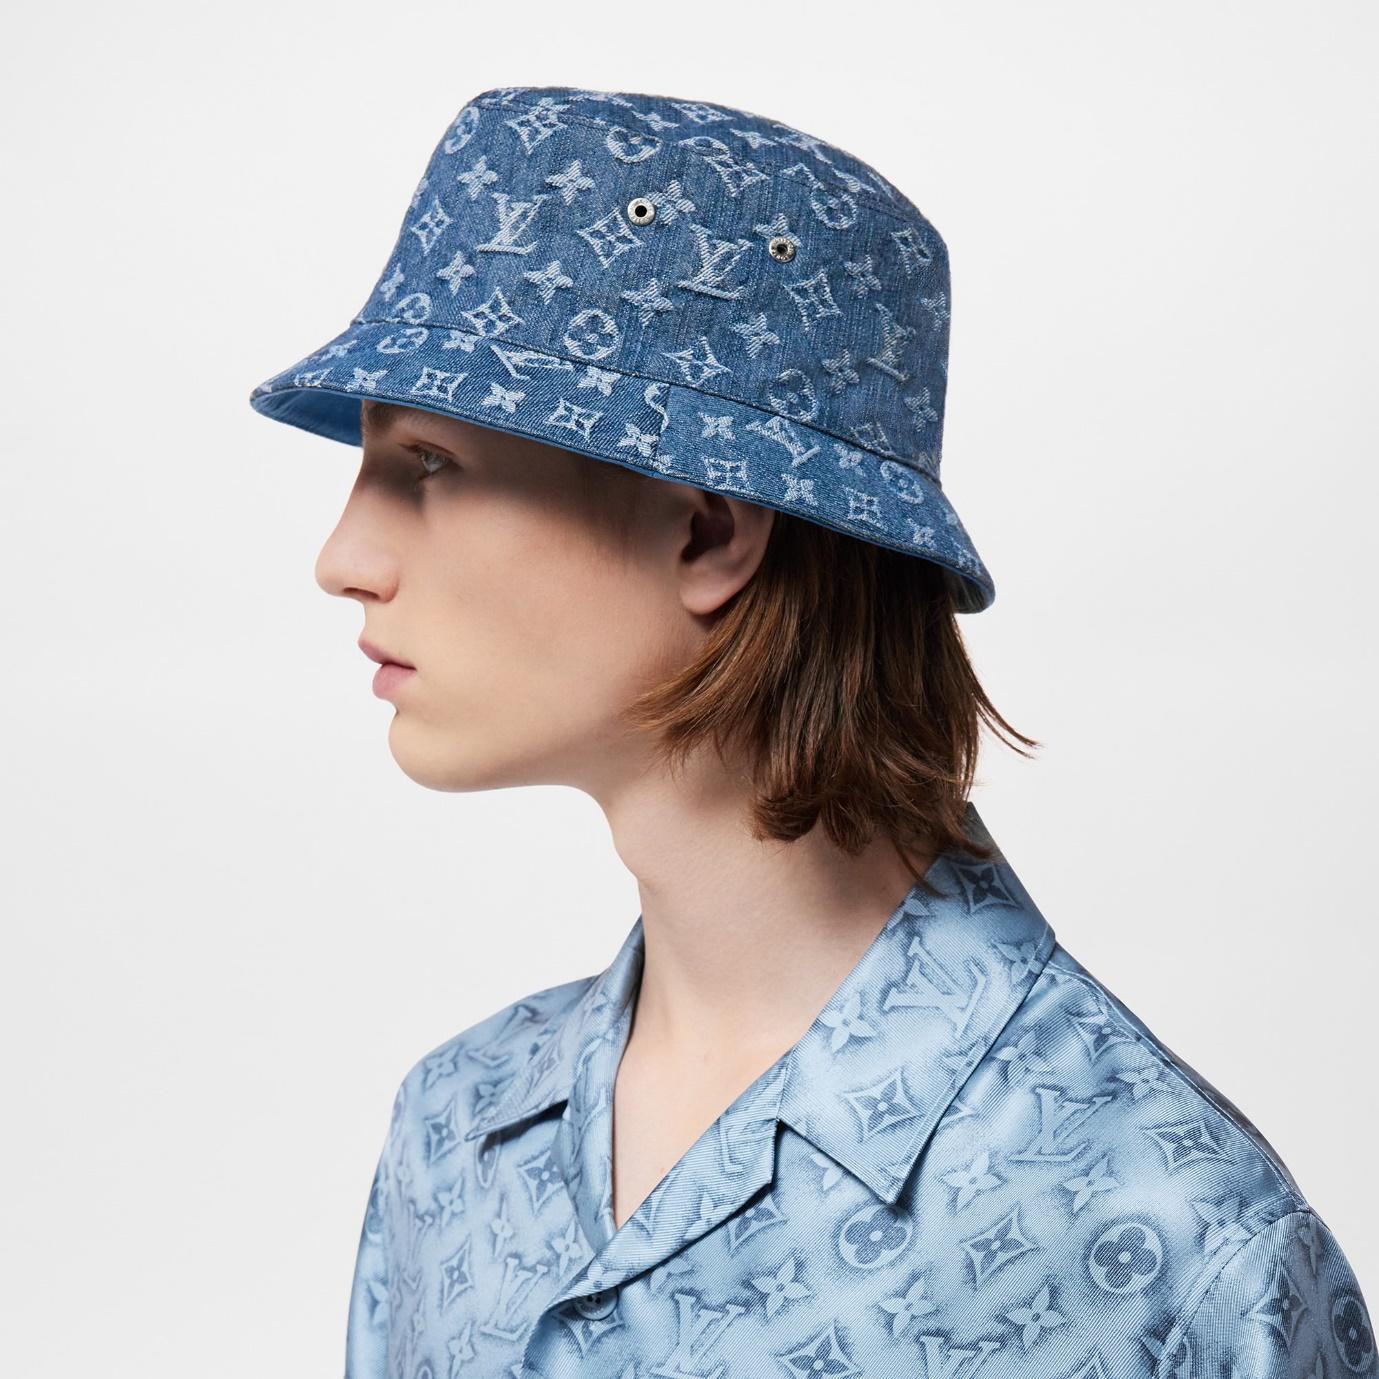 3. Louis Vuitton Monogram Essential Bucket Hat 